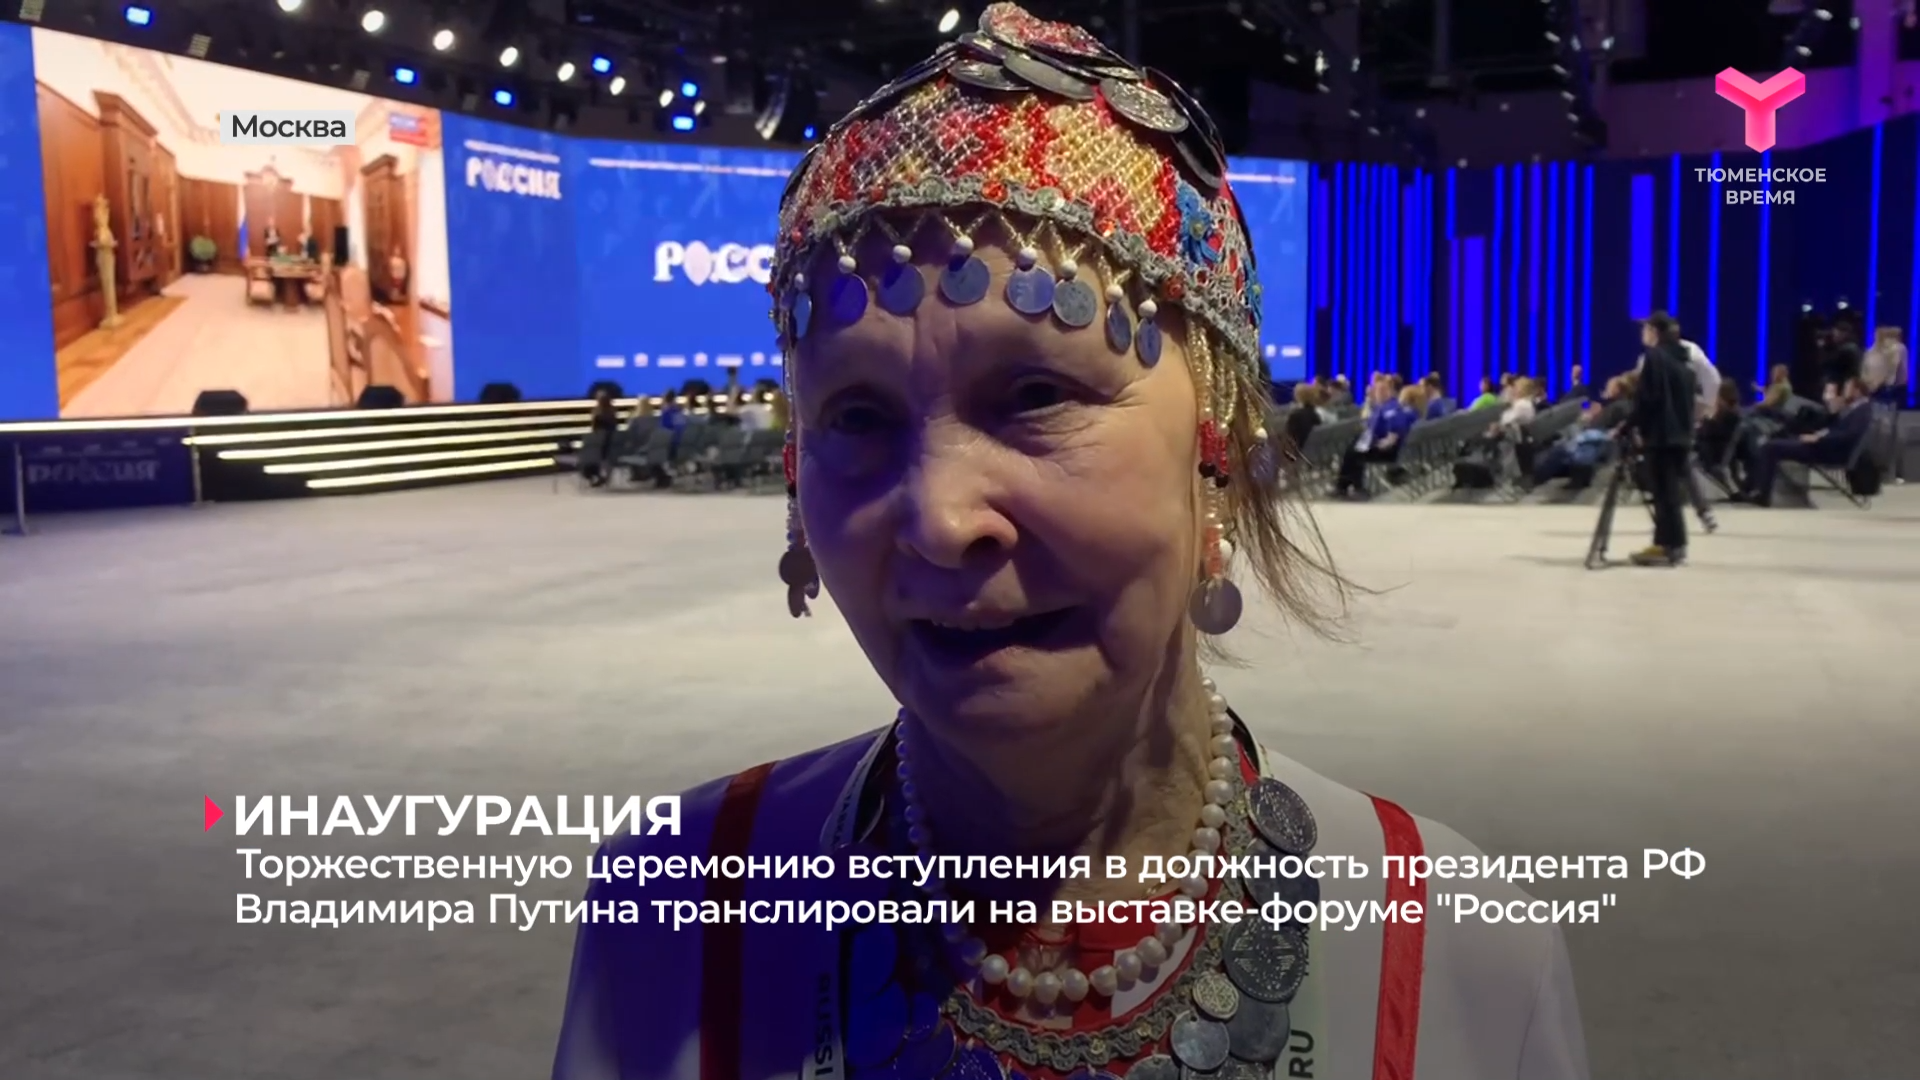 Торжественную церемонию вступления в должность президента транслировали на выставке-форуме "Россия"